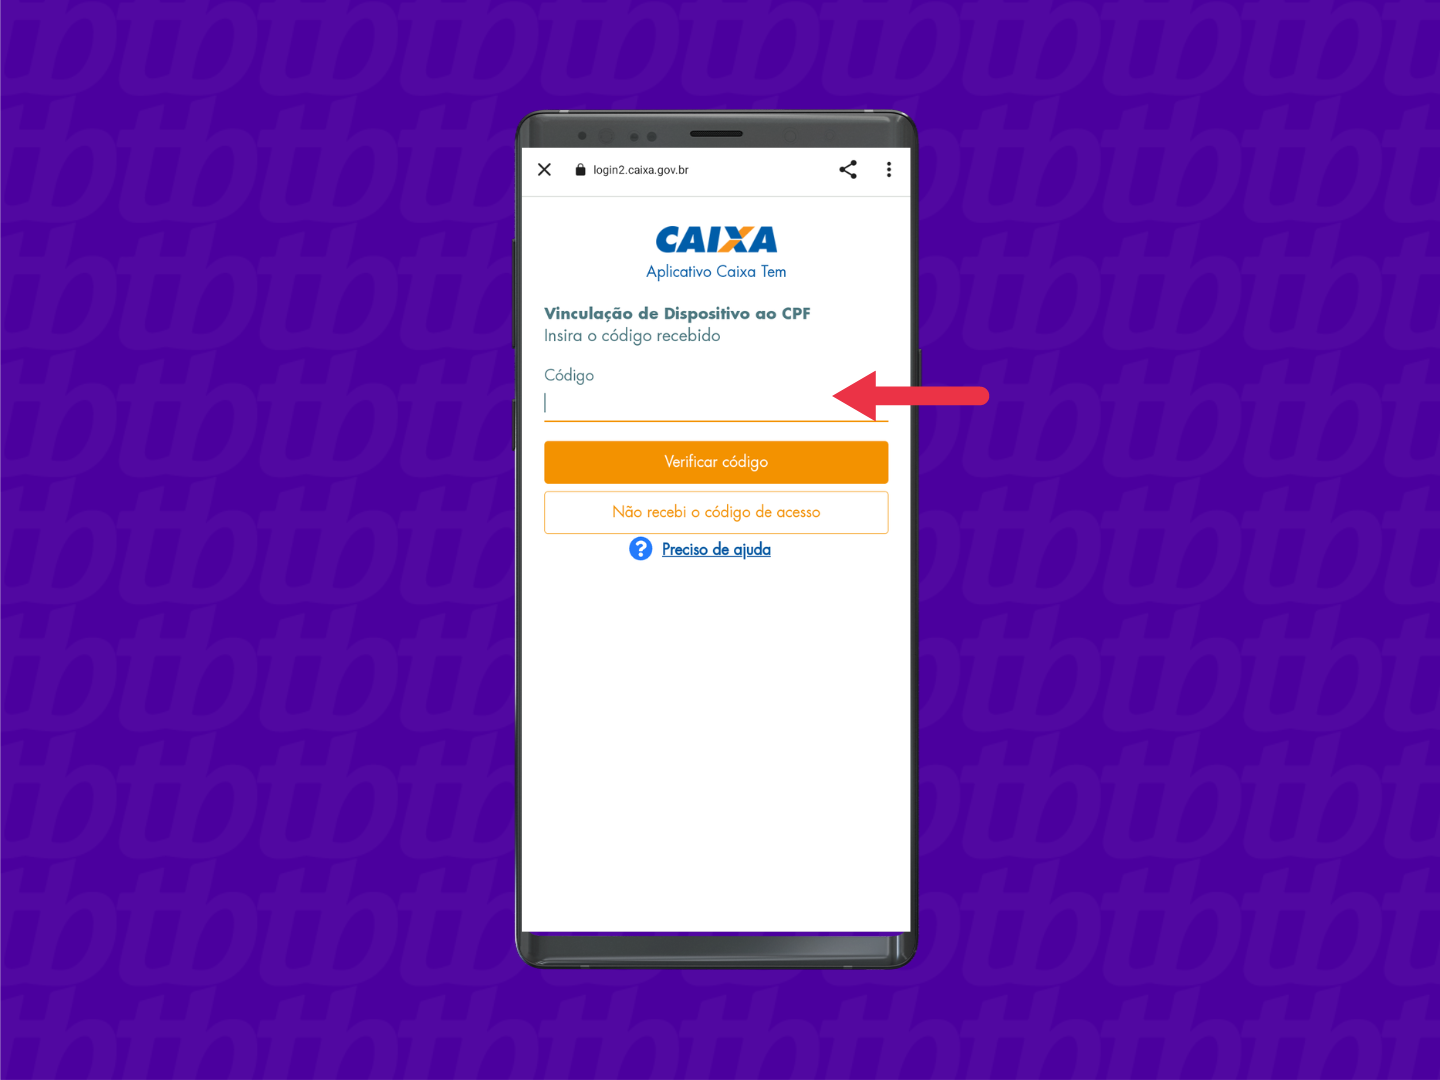 Tela do app Caixa Tem com seta apontada para o campo onde deve ser digitado o código enviado por SMS.